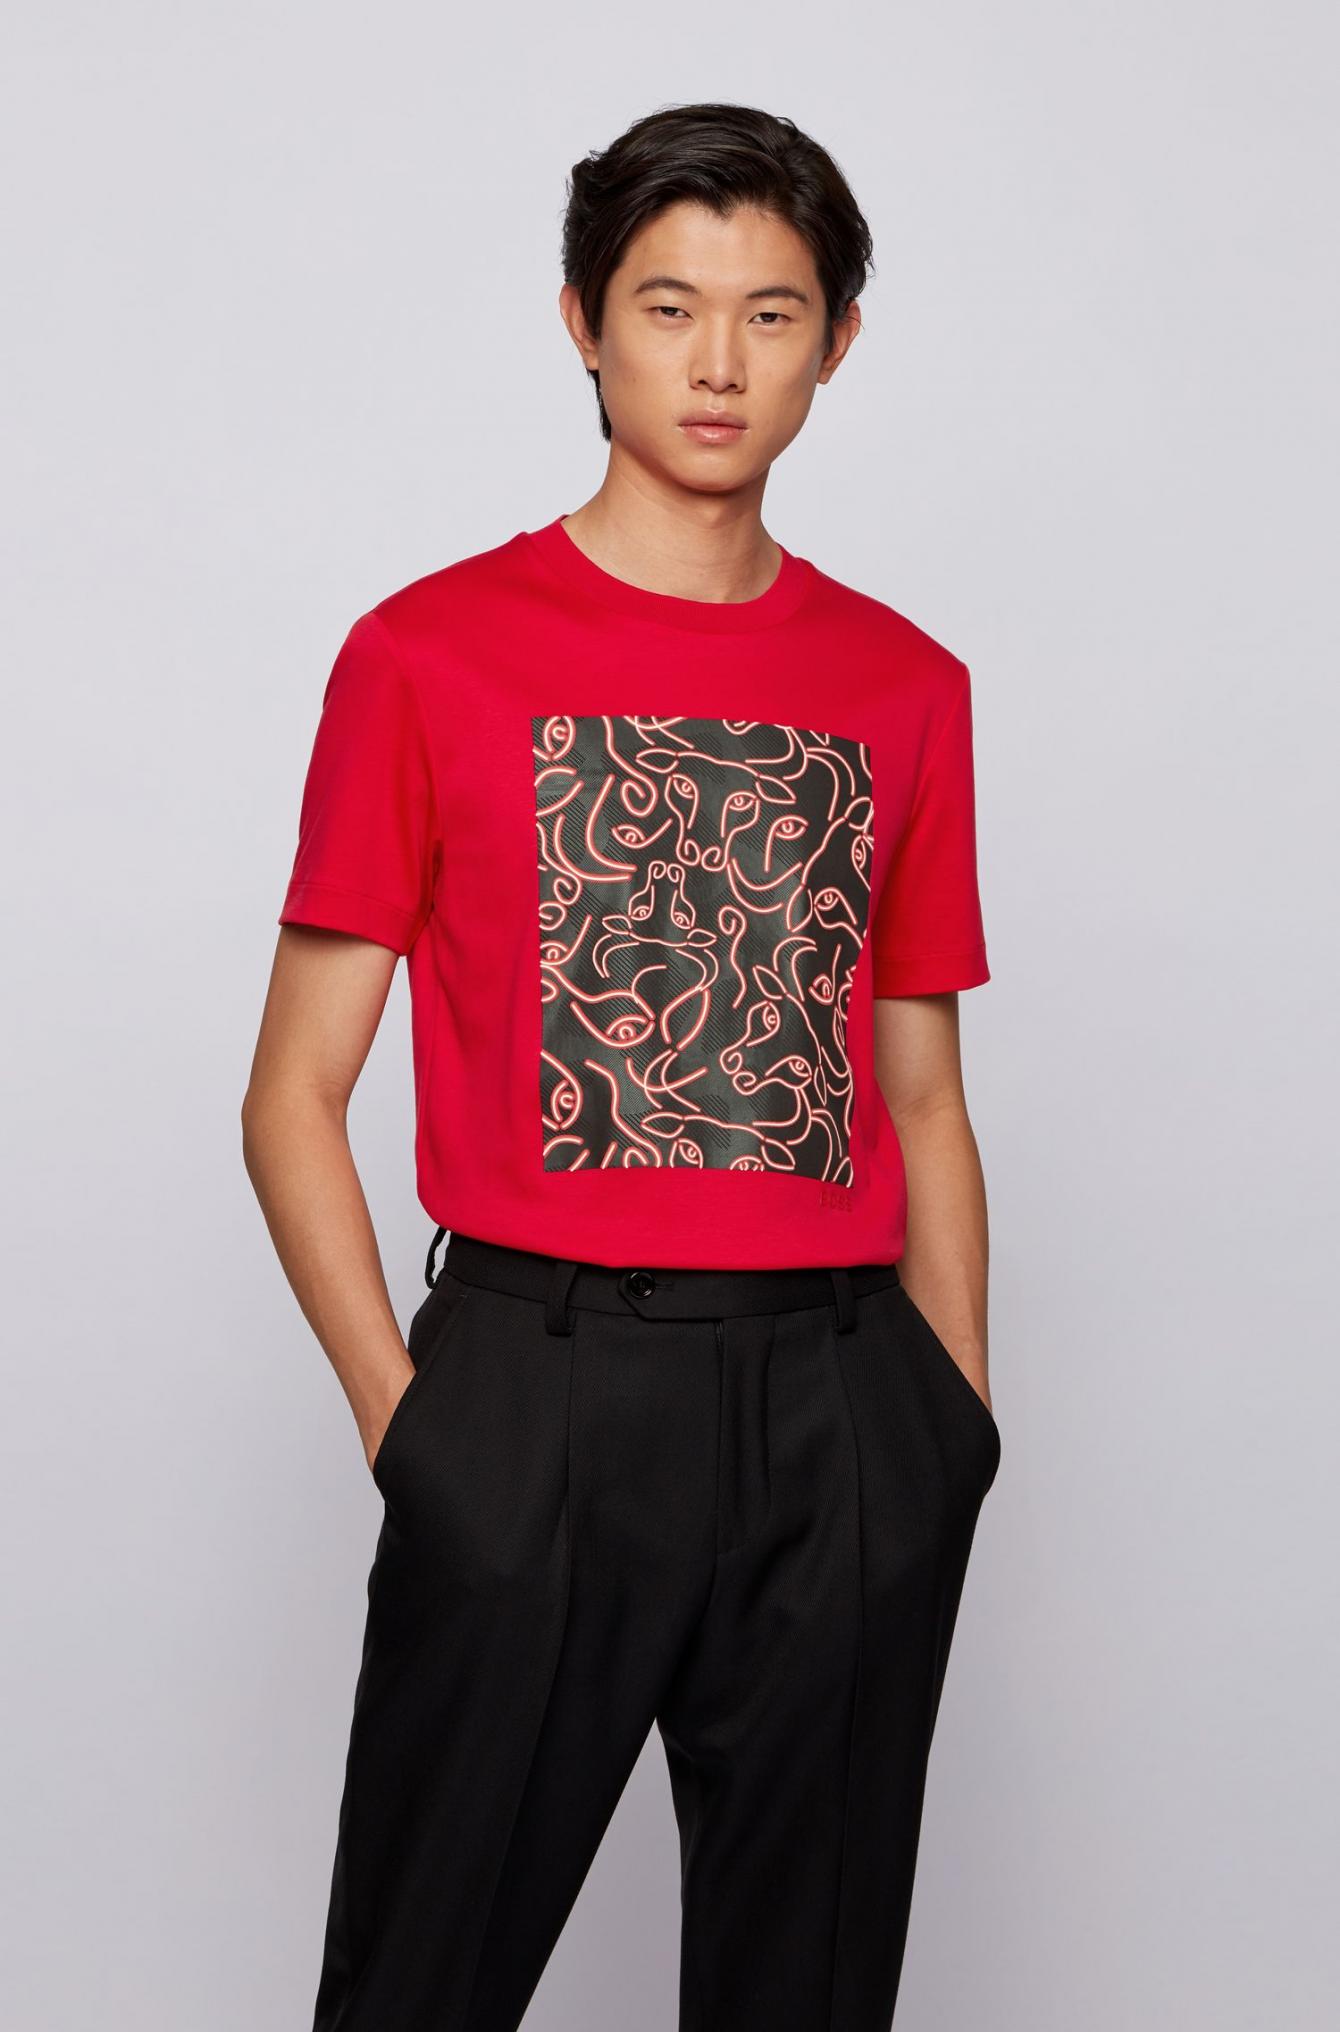 T-shirt Regular Fit en coton avec motif logo artistique Coton BOSS by HUGO BOSS pour homme en coloris Rouge Homme T-shirts T-shirts BOSS by HUGO BOSS 